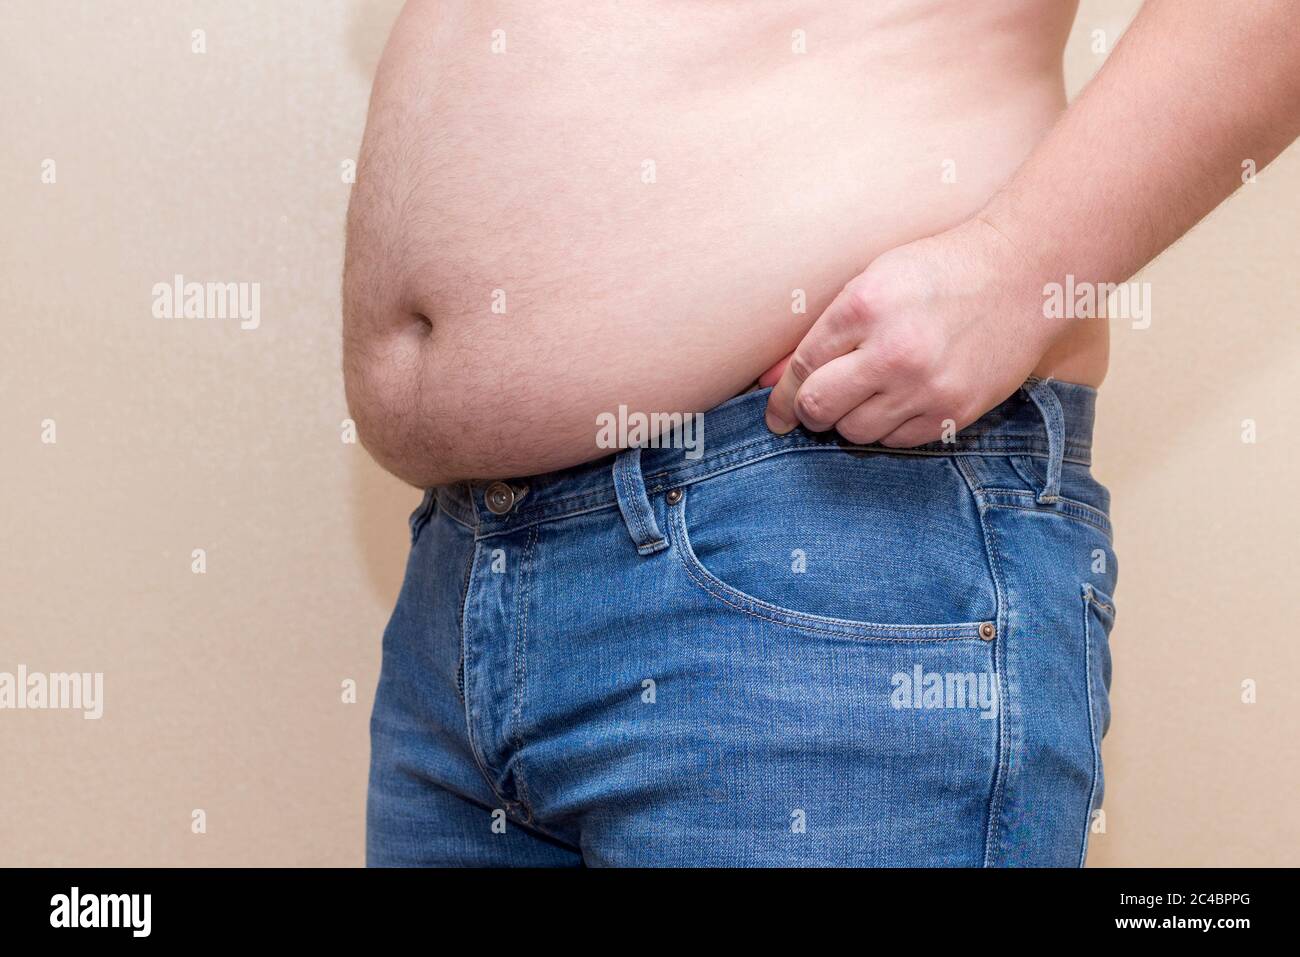 Mann trägt blaue Jeans, dicken Bauch Nahaufnahme, das Problem von  Übergewicht Stockfotografie - Alamy